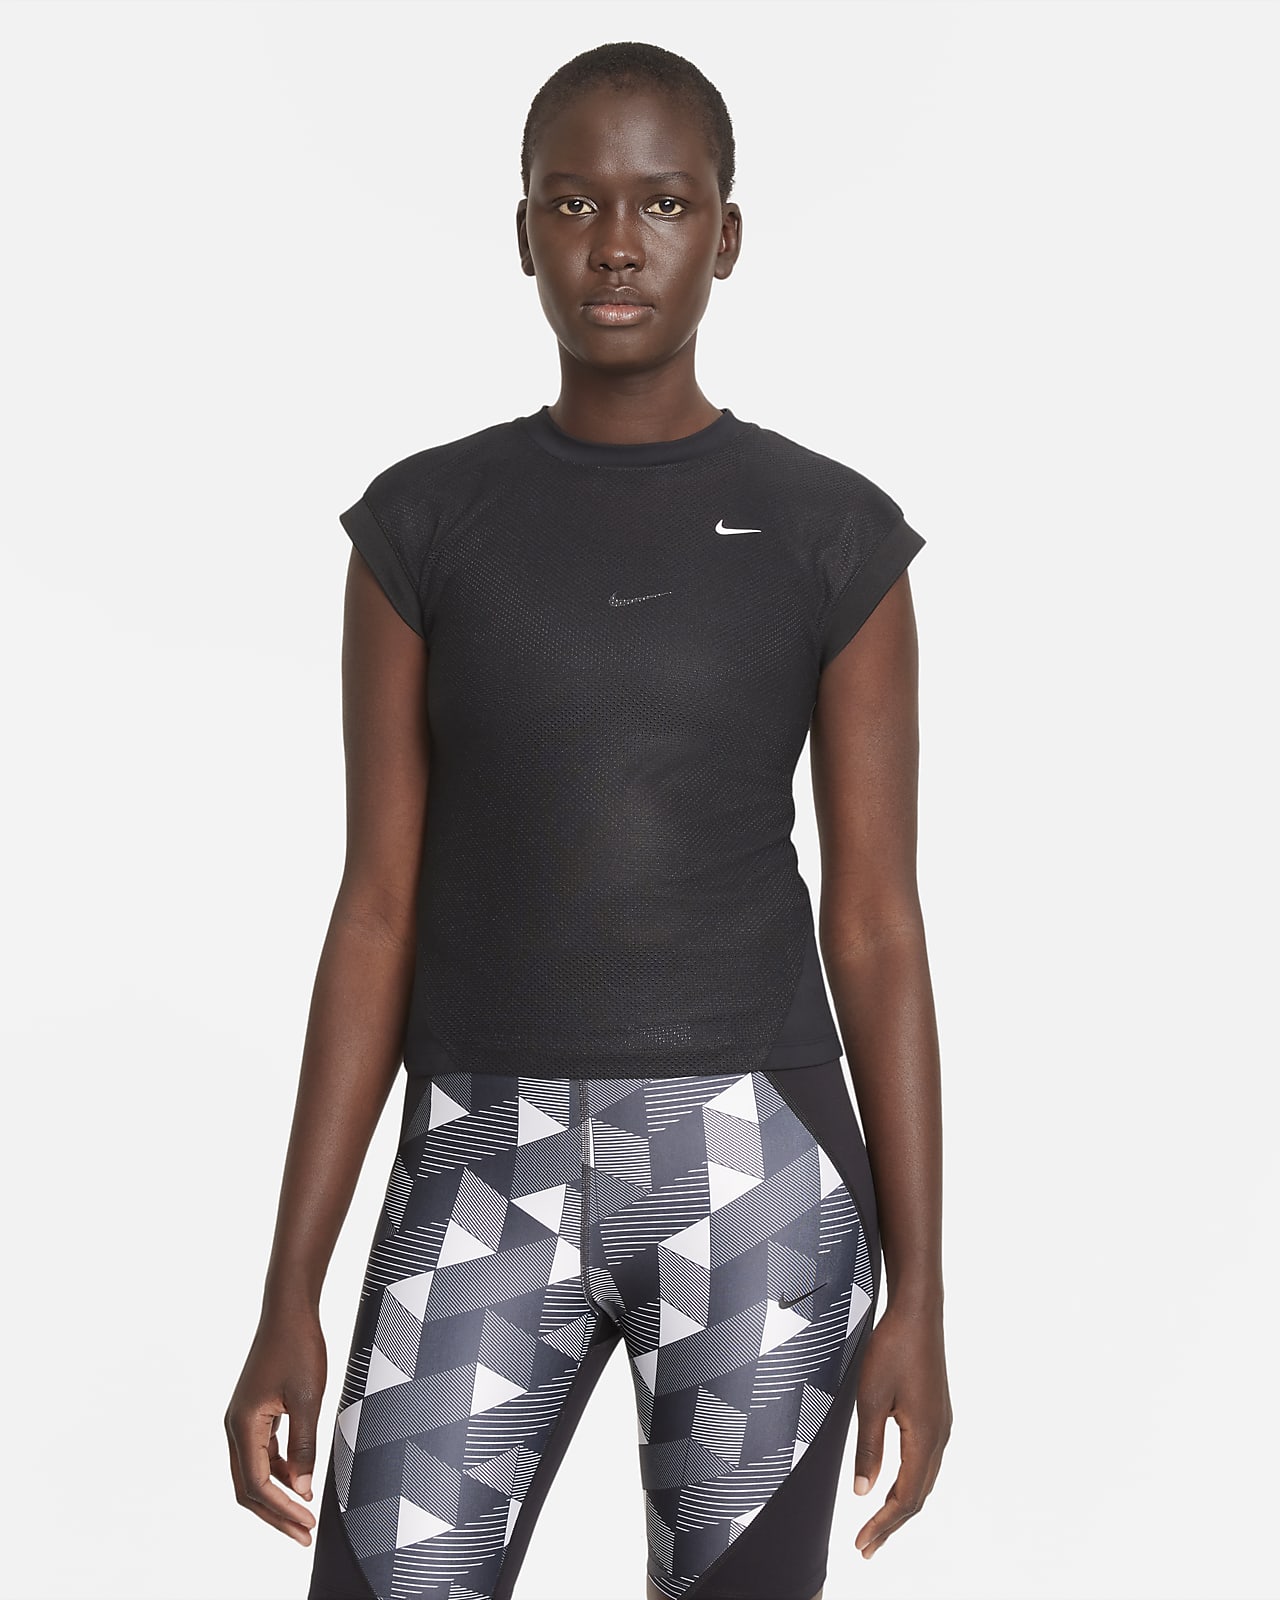 rechtop Weggelaten Doodt Serena Williams Design Crew Women's Short-Sleeve Tennis Top. Nike.com